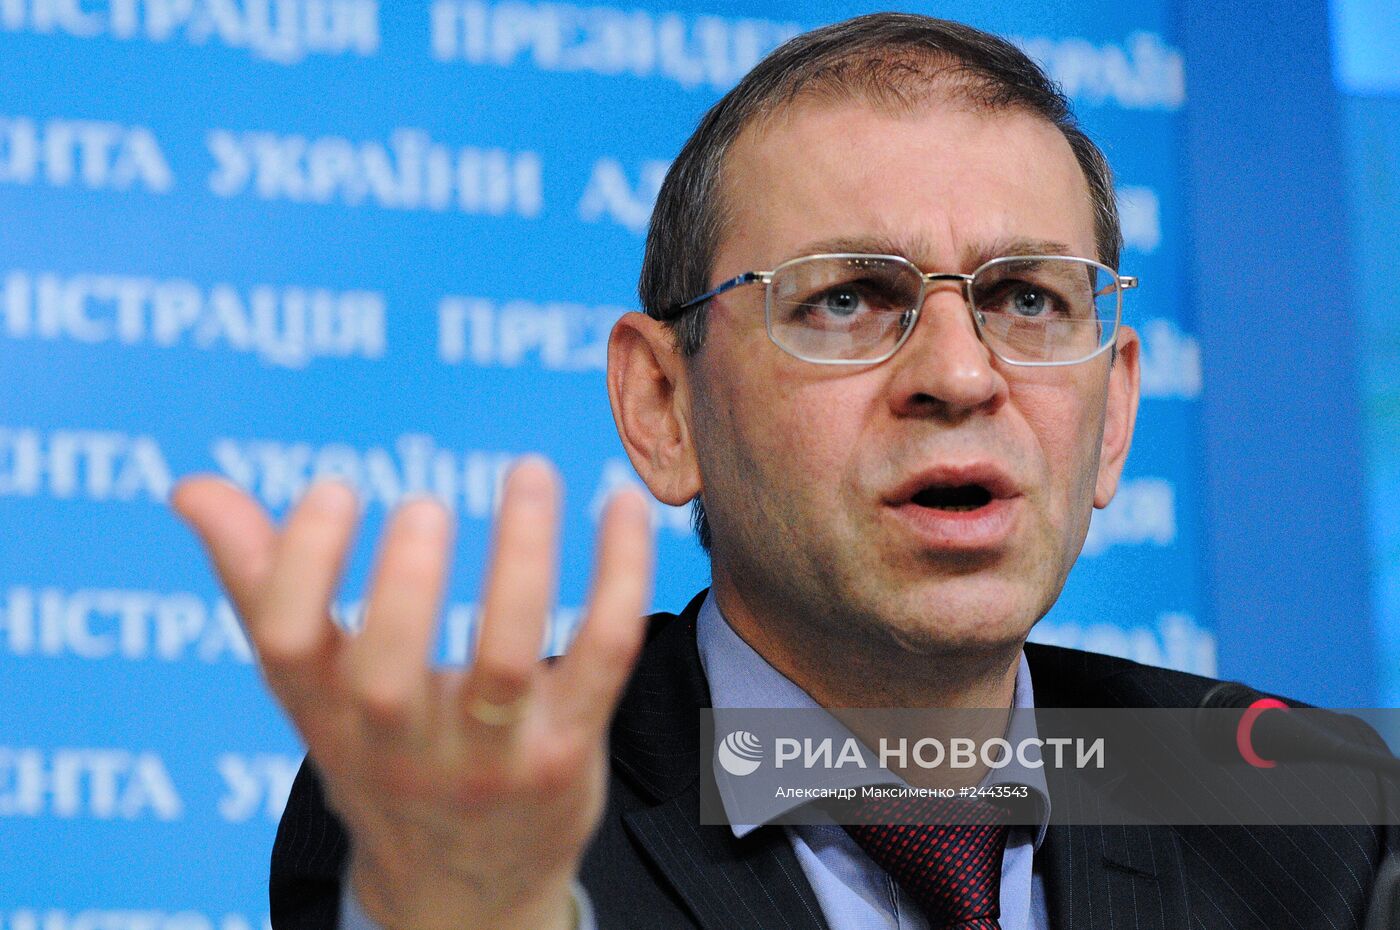 Брифинг и.о. главы администрации президента Украины С.Пашинского